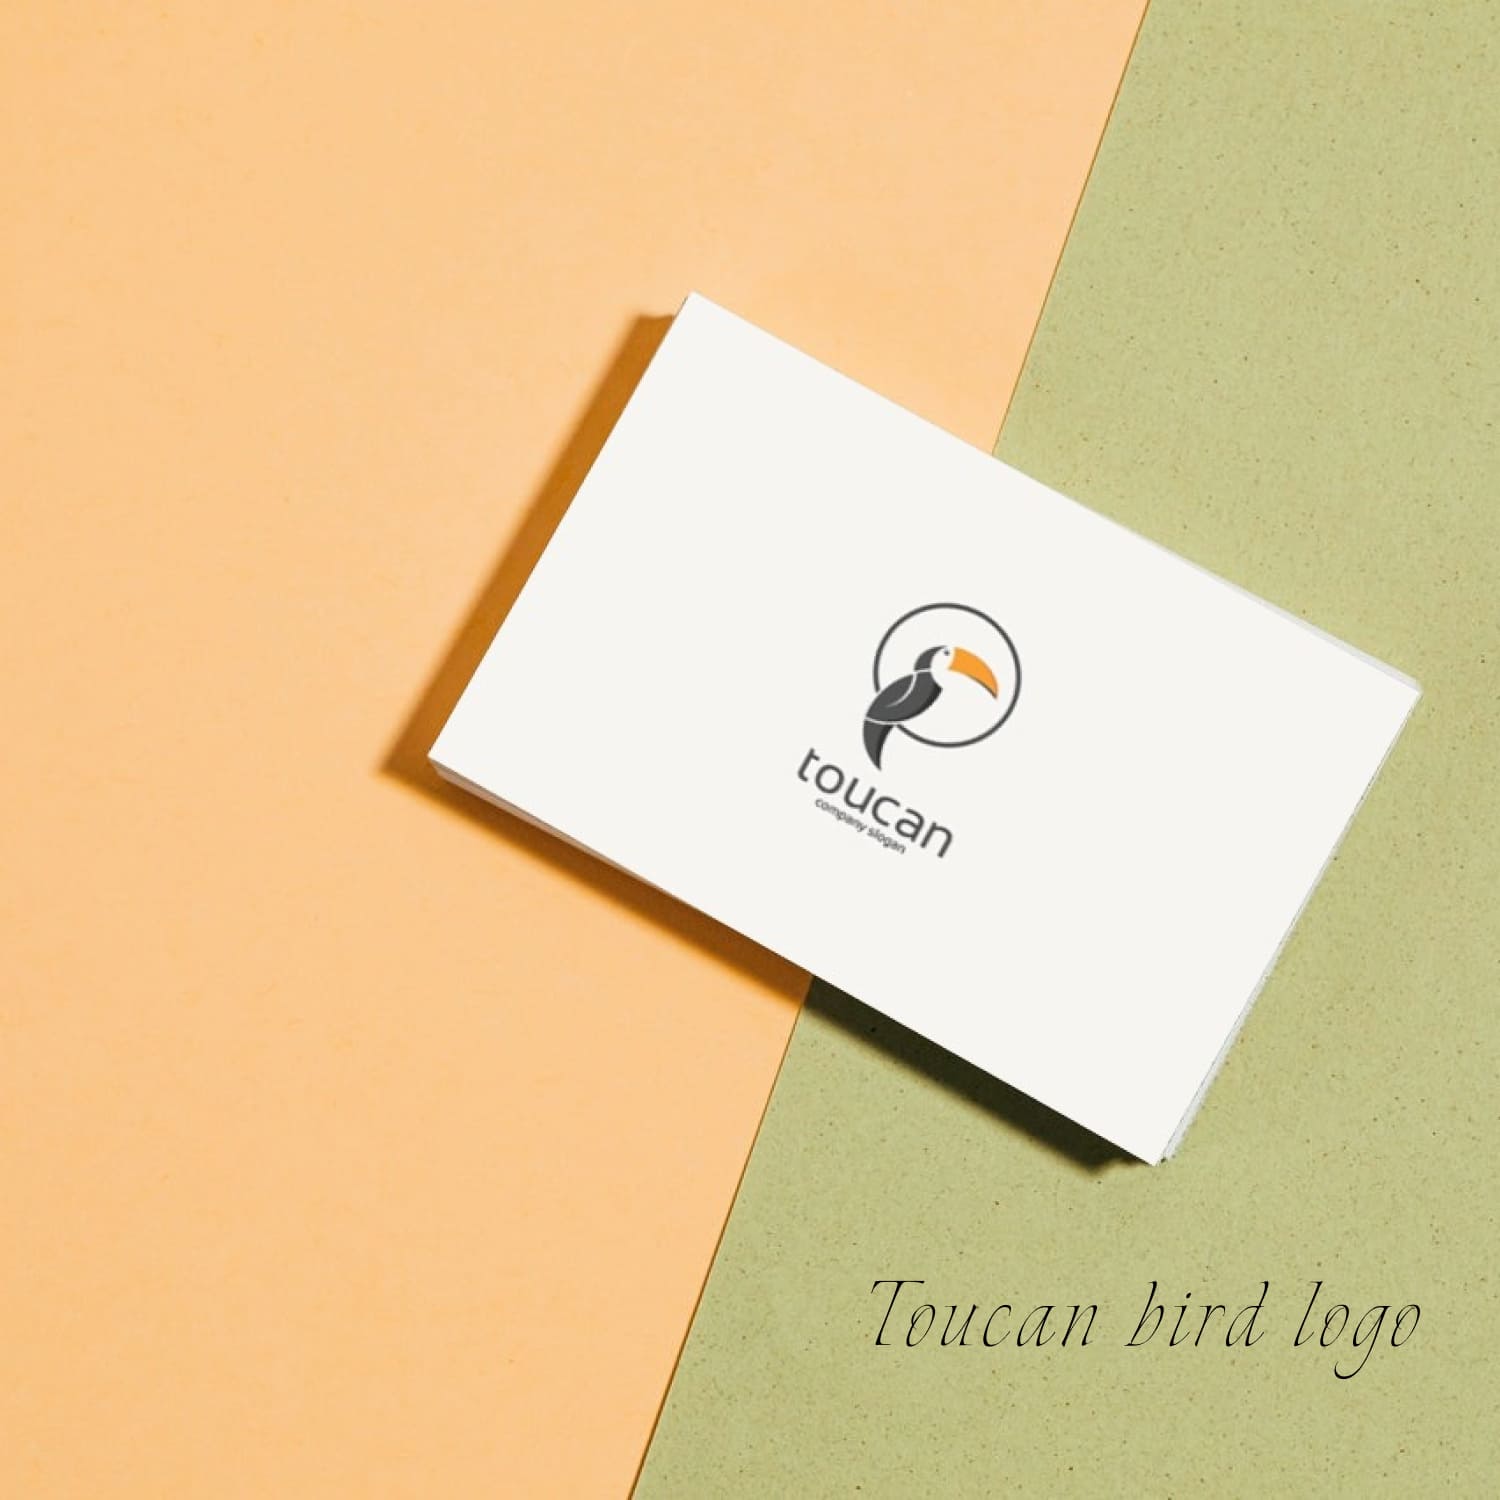 toucan bird logo business card mockup.